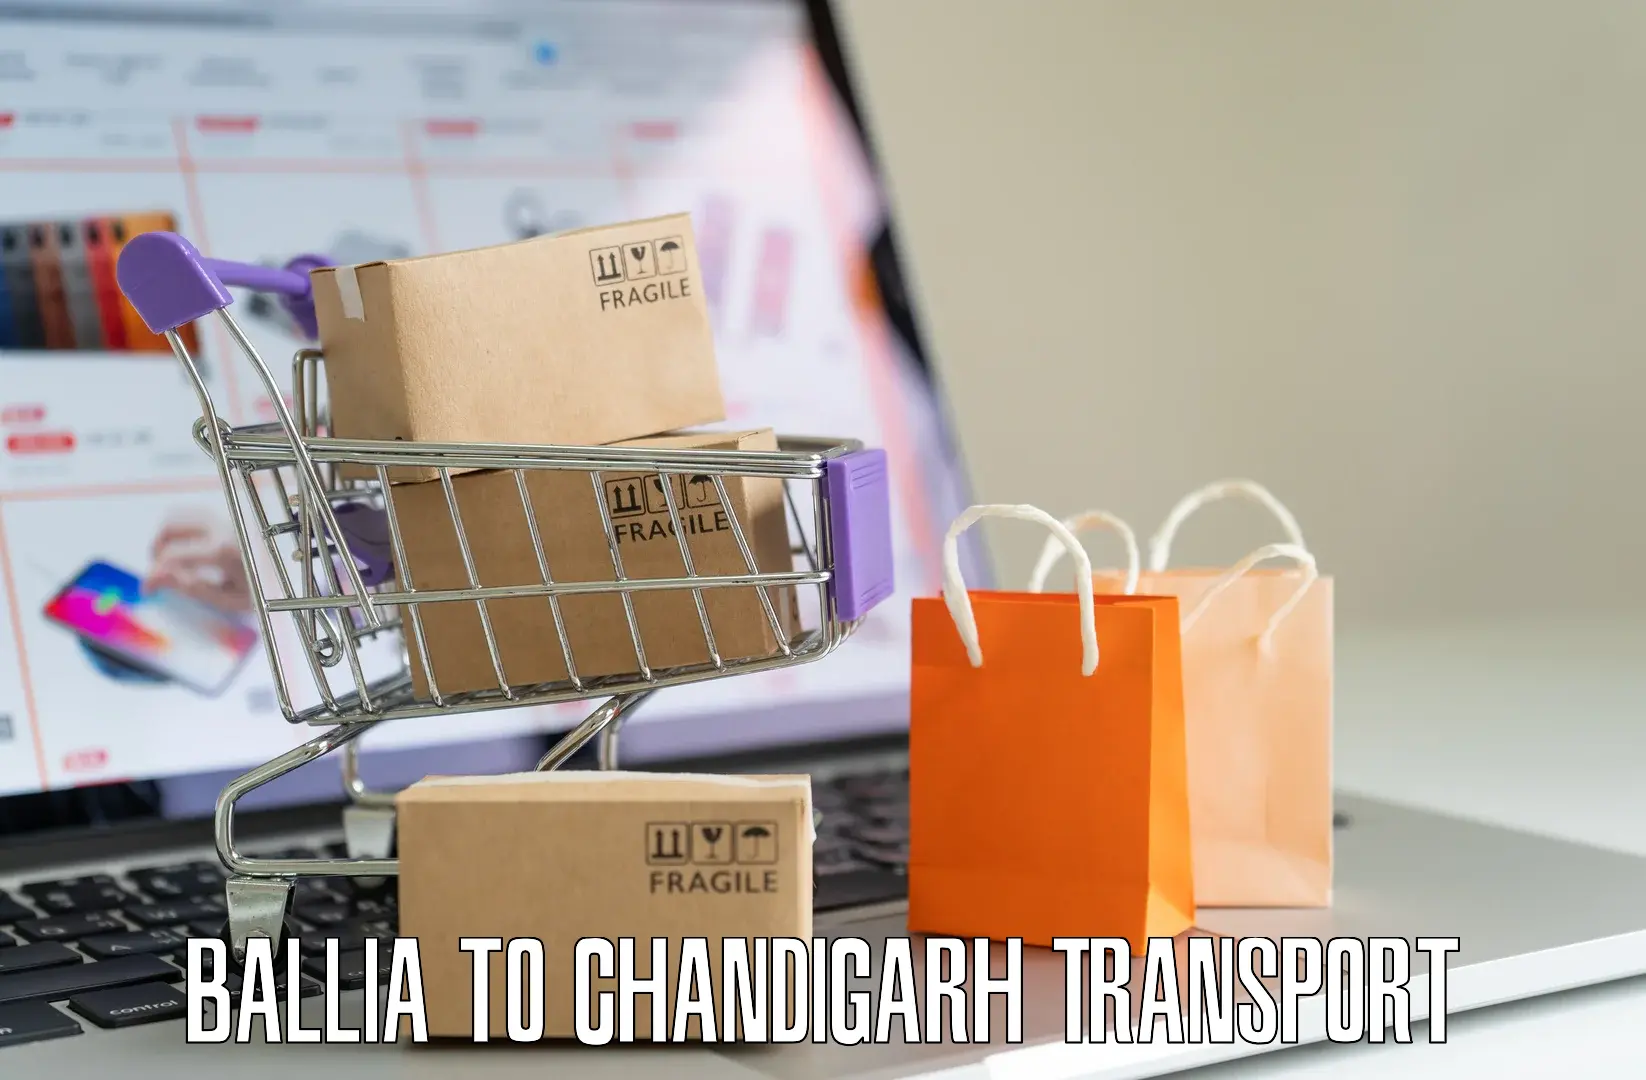 Shipping partner Ballia to Chandigarh